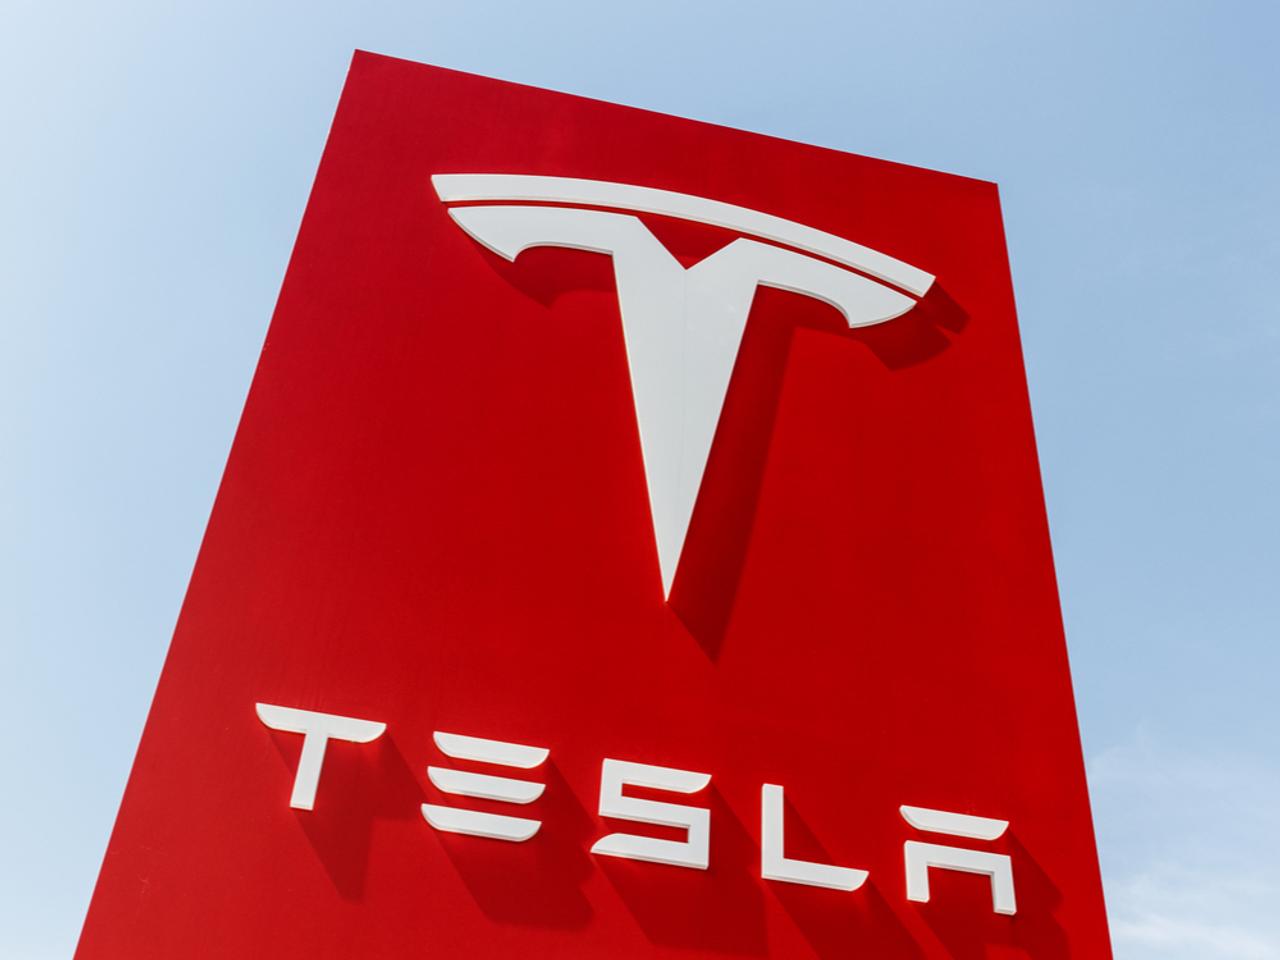 Teslaでは社員の推薦がない契約社員は月曜から出社禁止だそうです